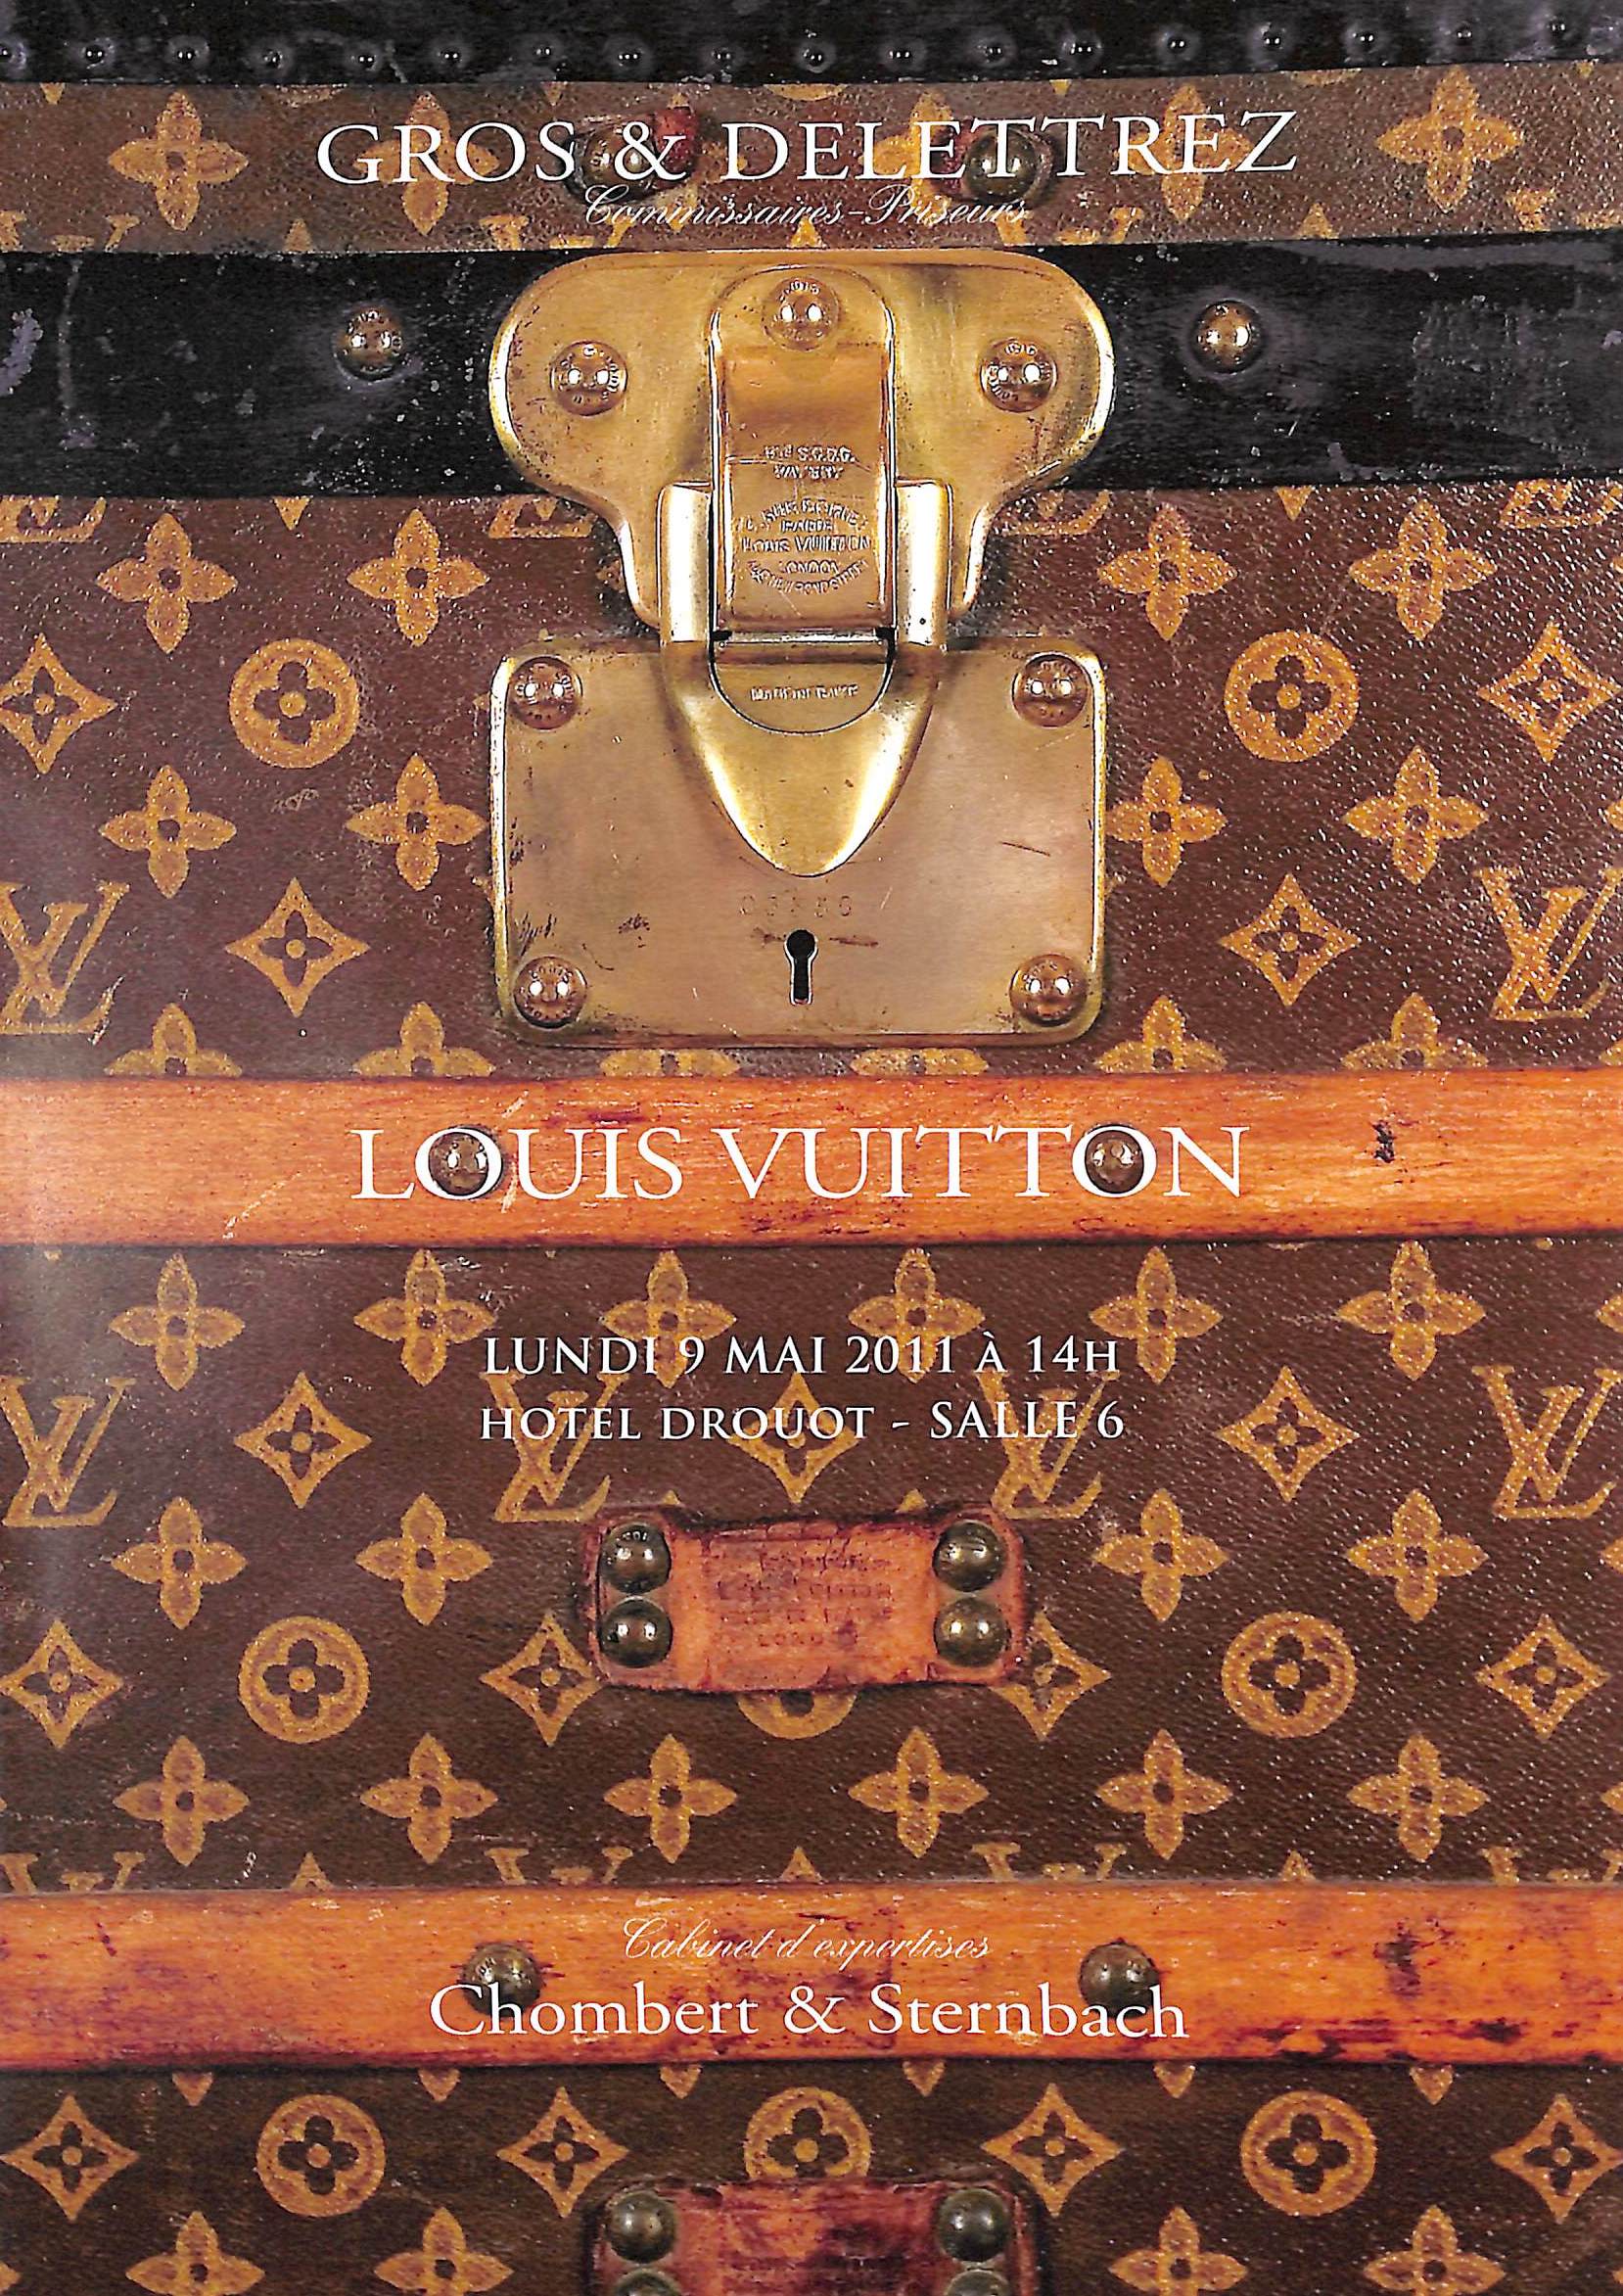 Sold at Auction: Louis Vuitton, Louis Vuitton, Paris: Two Original